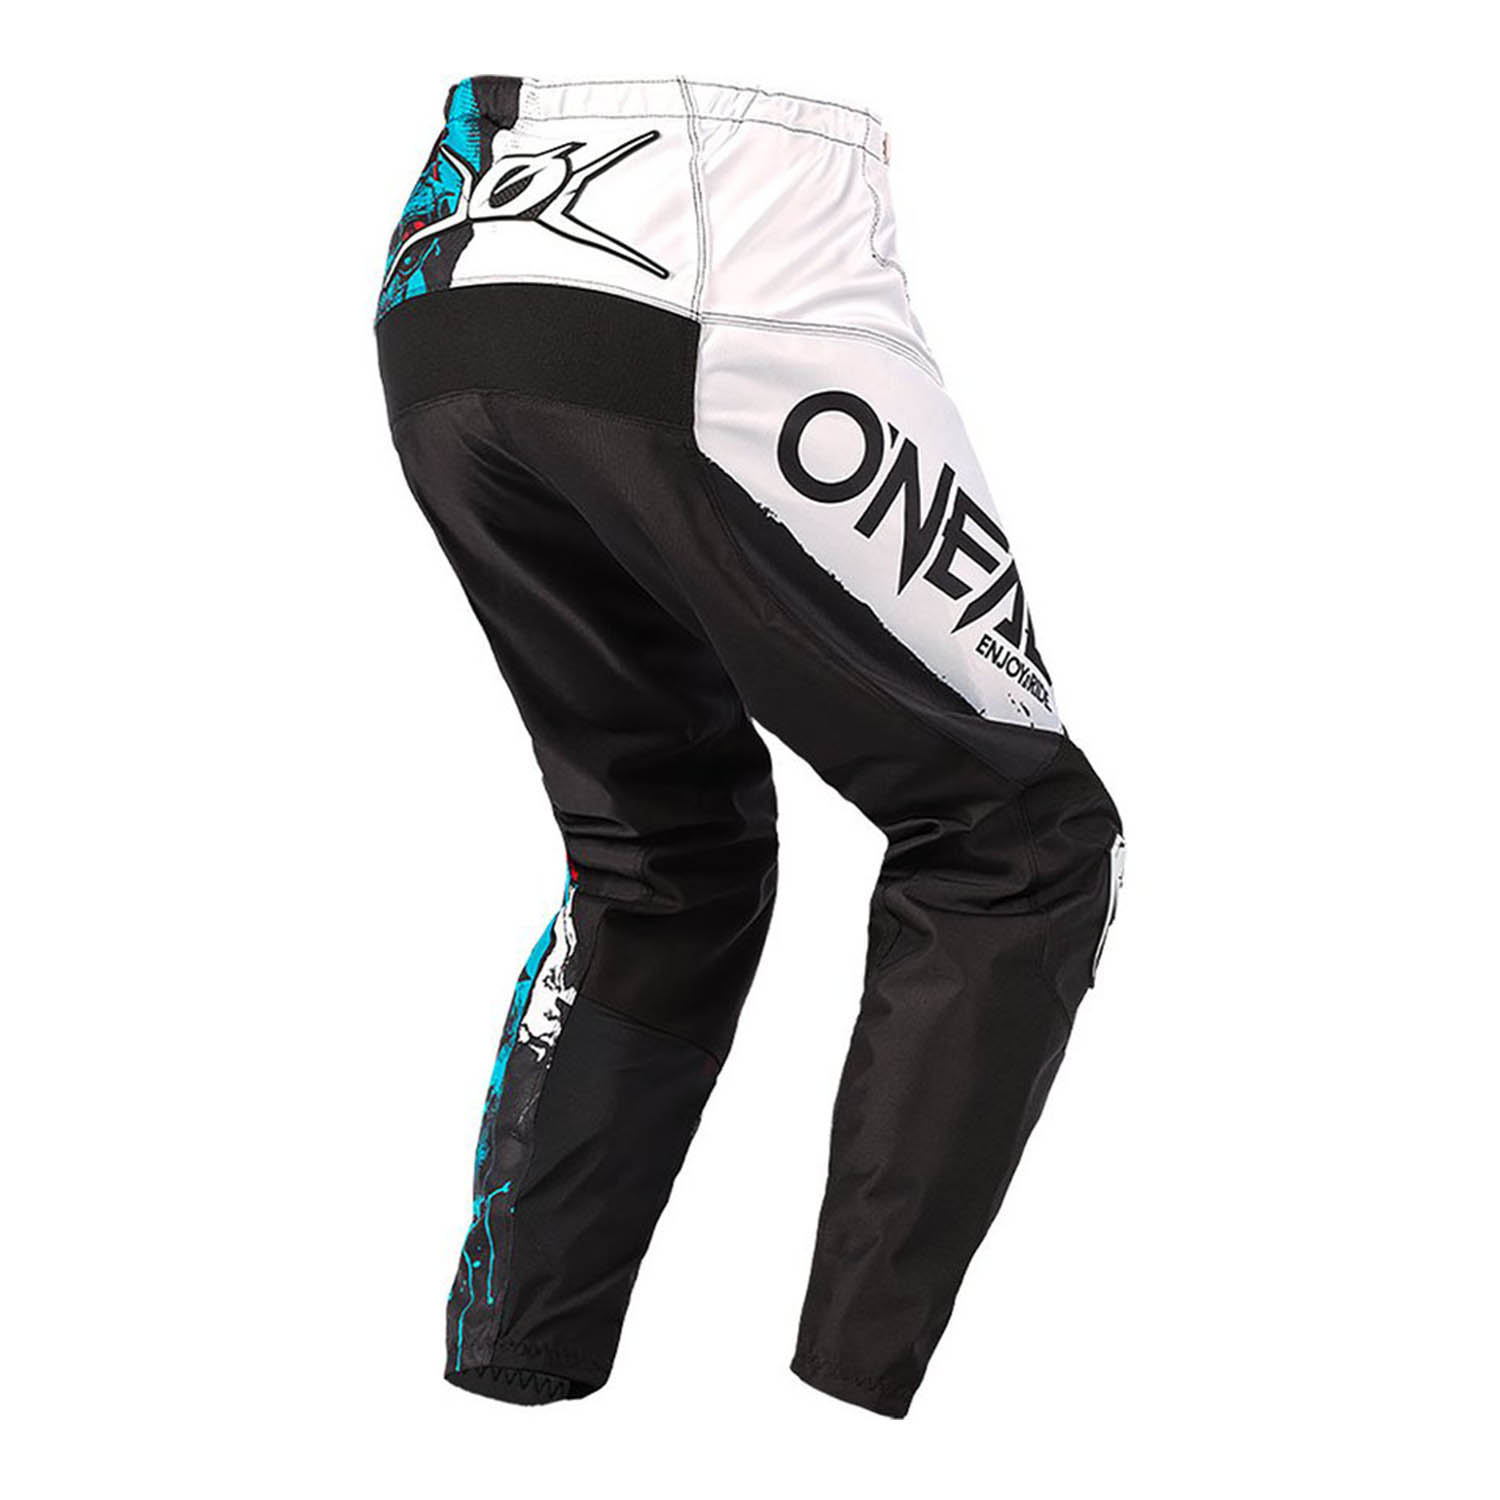 Штаны для мотокросса O'NEAL ELEMENT PANTS RIDE черно-синего цвета, вид сзади купить по низкой цене